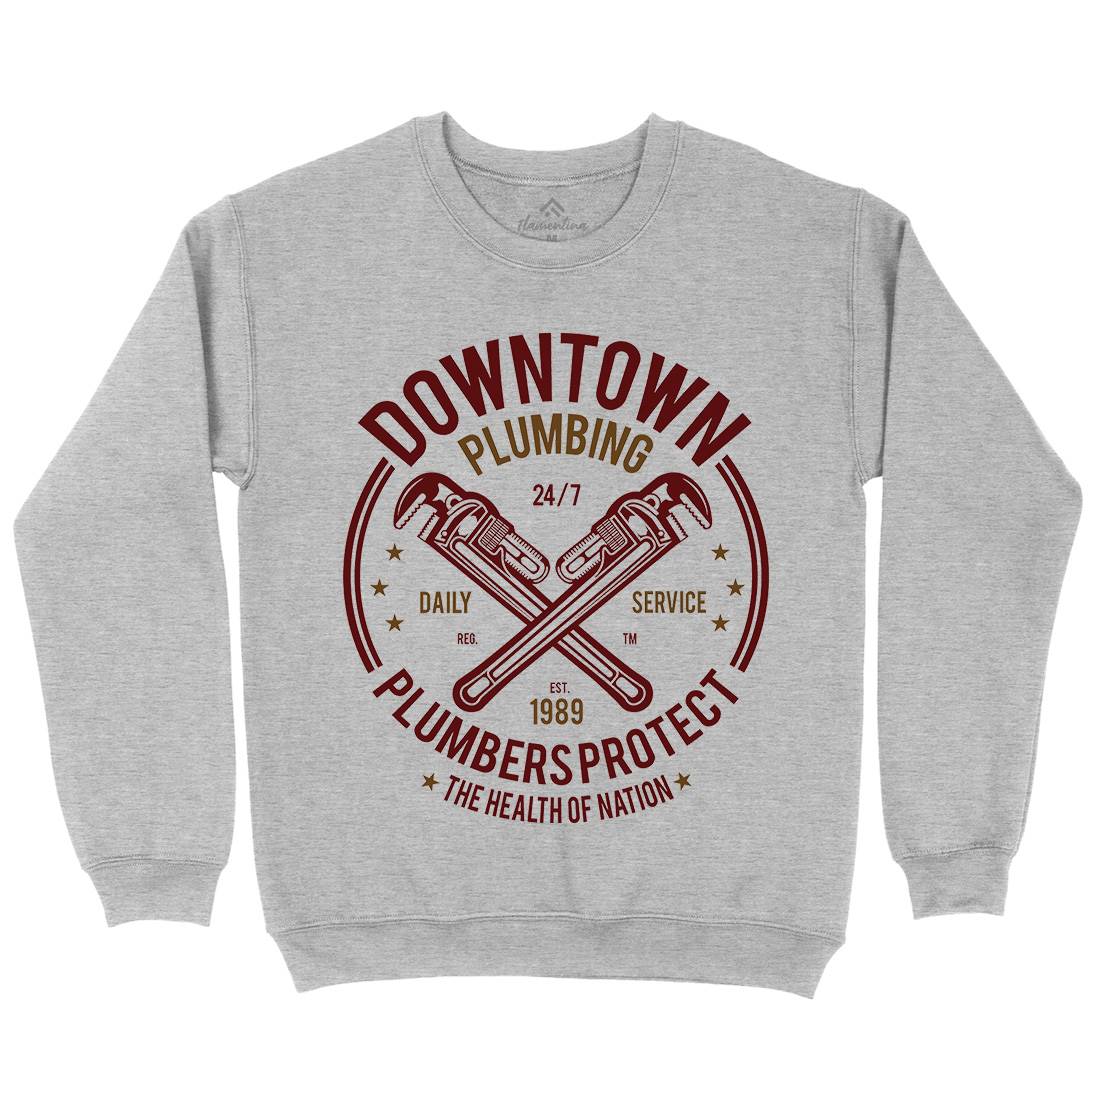 Downtown Plumbing Kids Crew Neck Sweatshirt Work A046